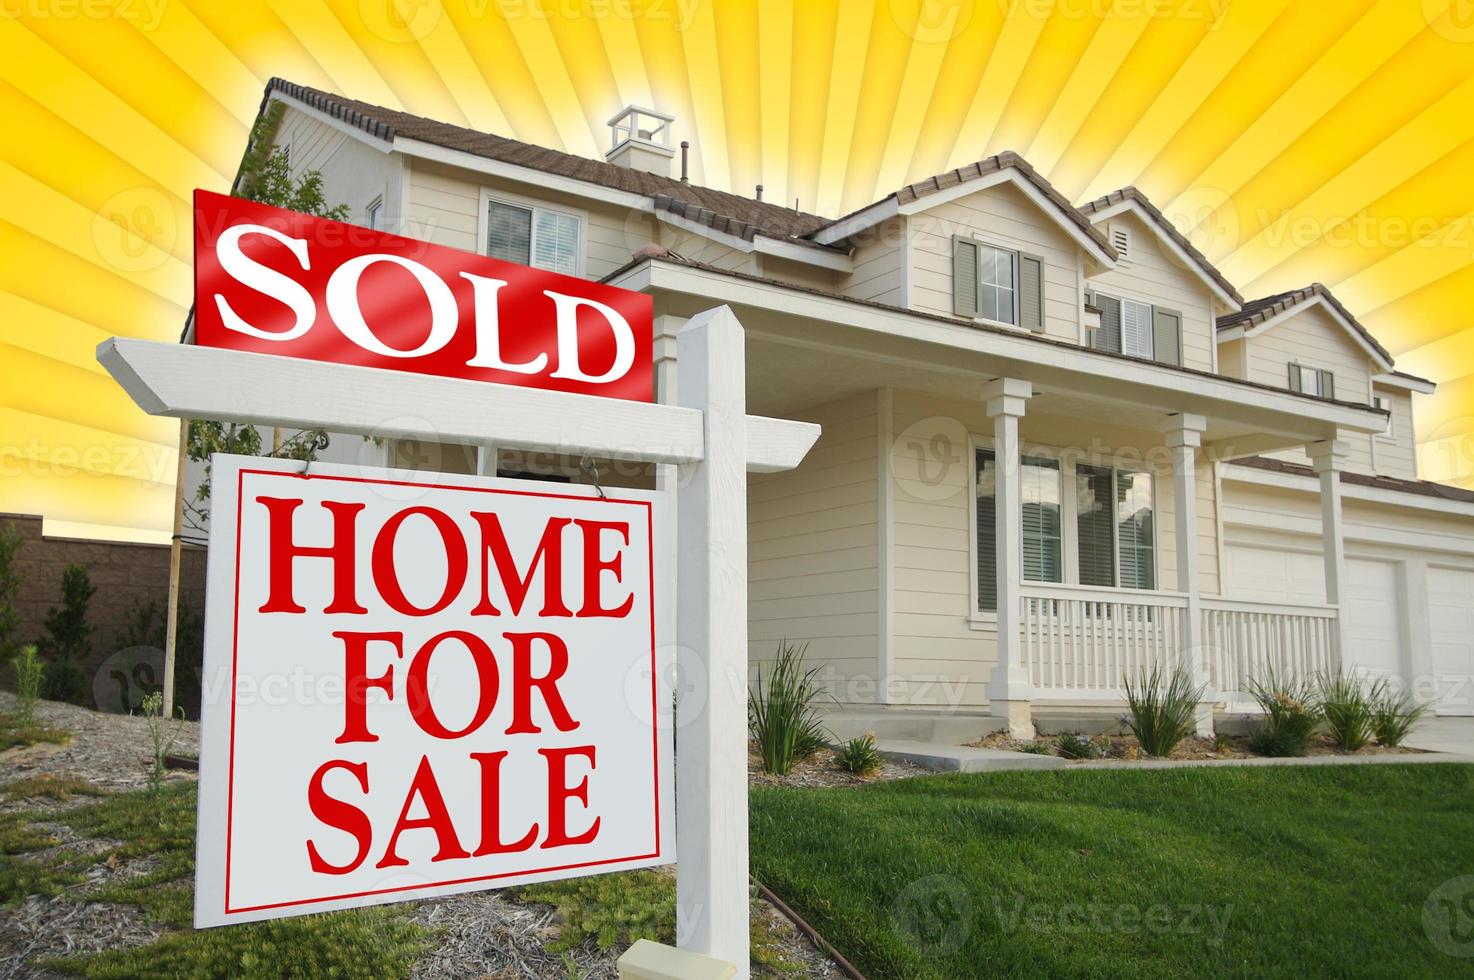 venduto casa per vendita cartello e nuovo Casa foto